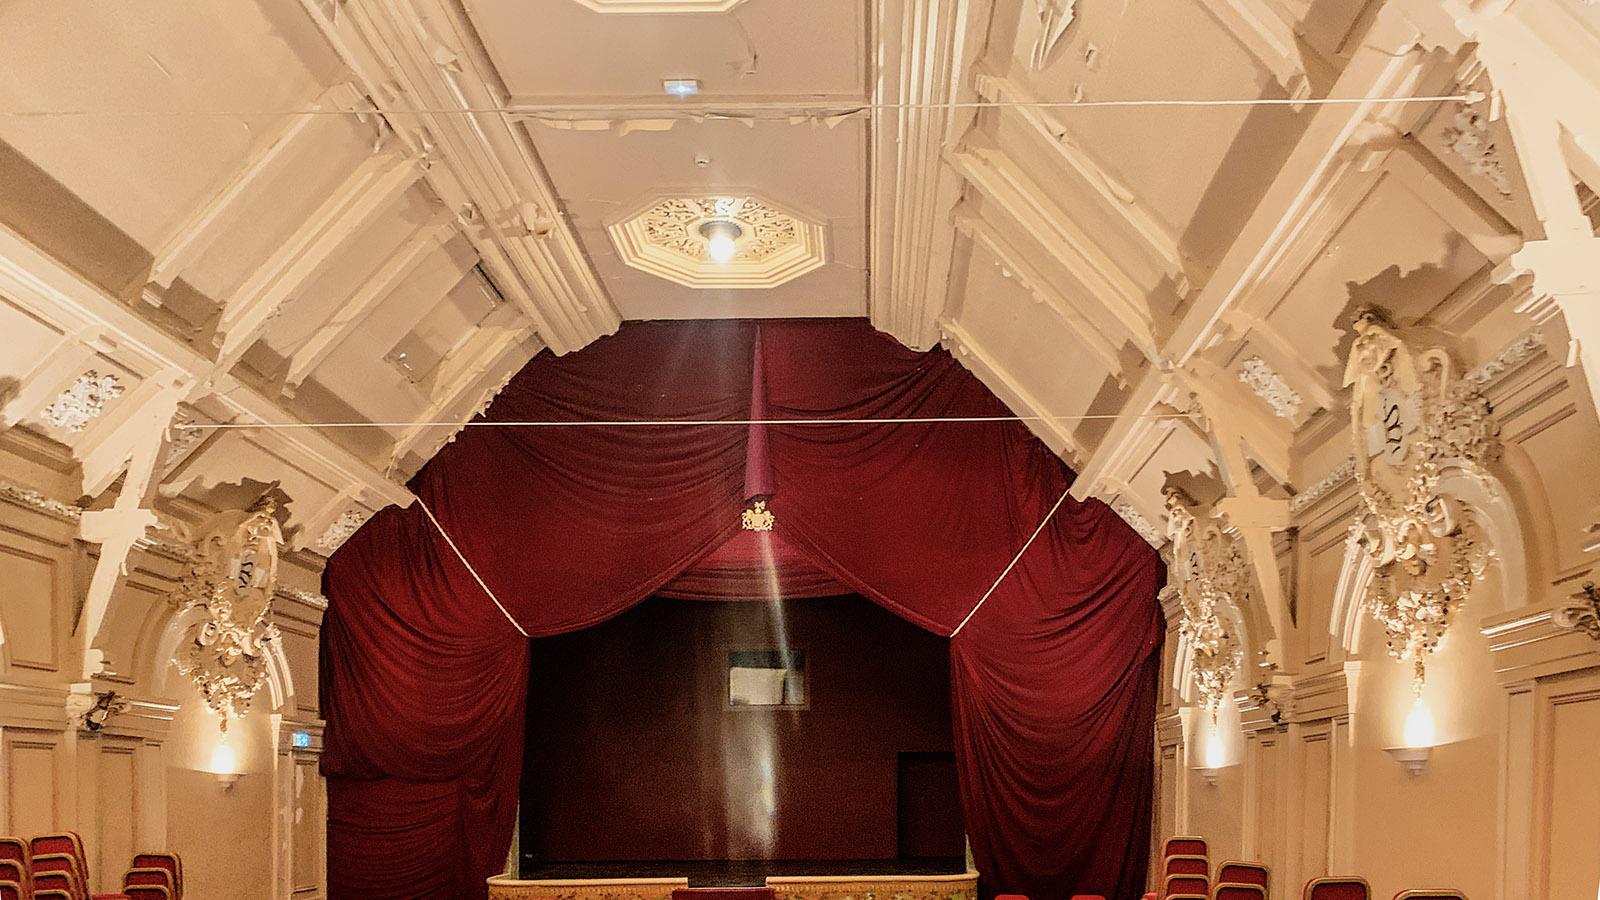 Das Theater von Bouvet-Ladubay wird derzeit restauriert. Foot: Hilke Maunder